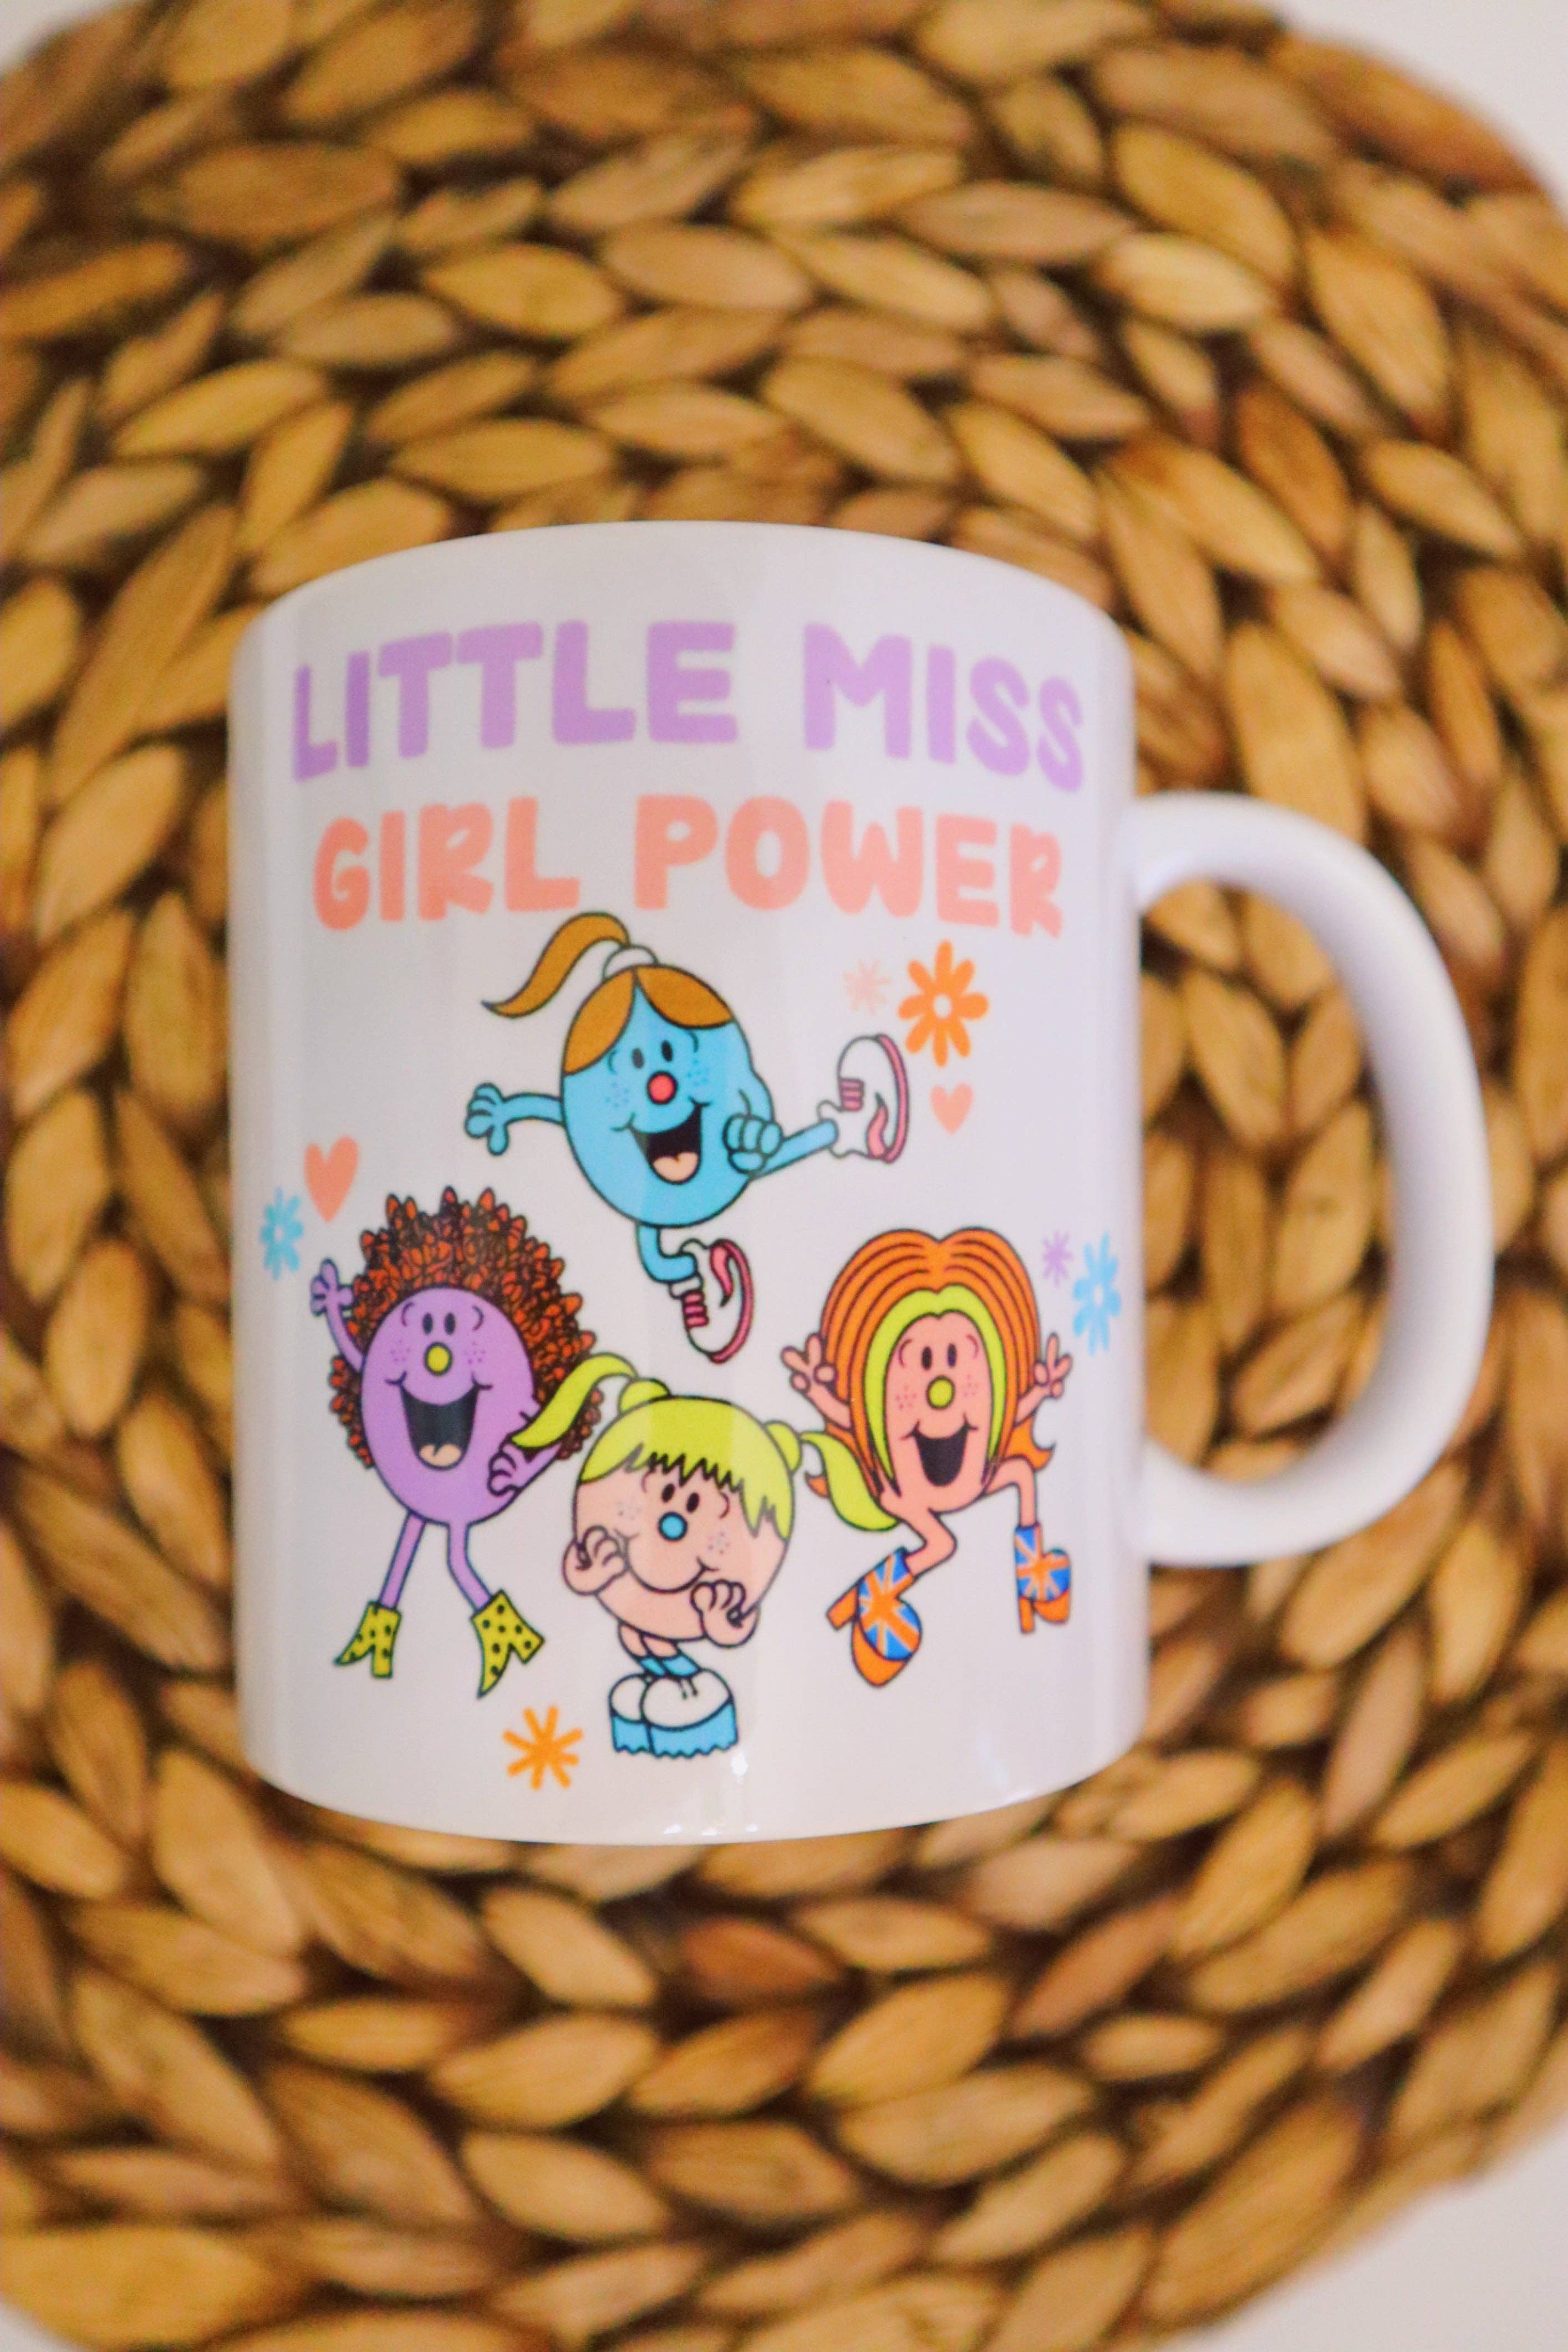 Little Miss Girl Power Mug